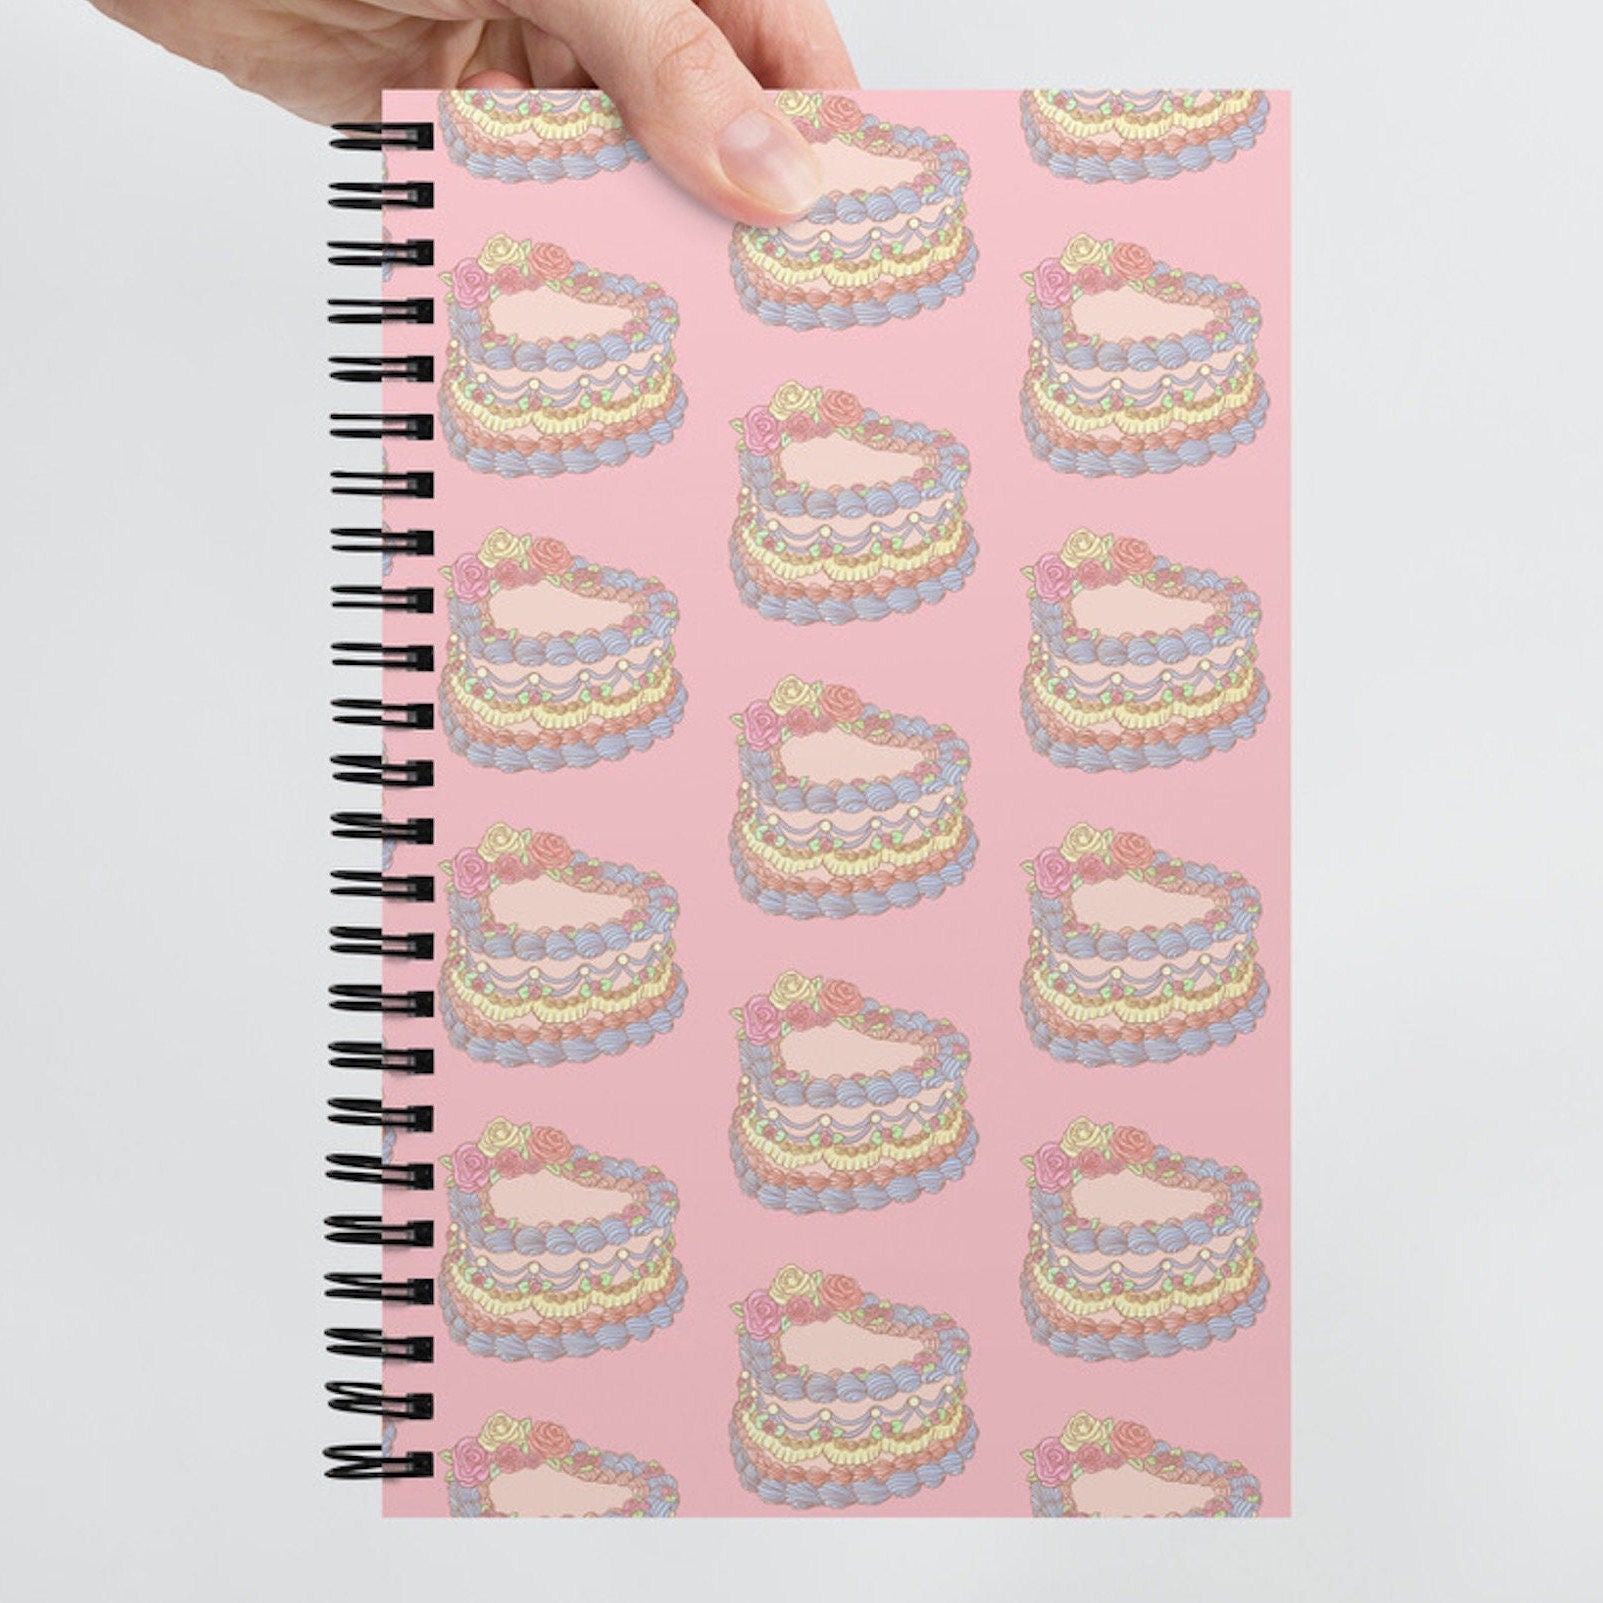 Cake Notebook - LOOP by Frankie